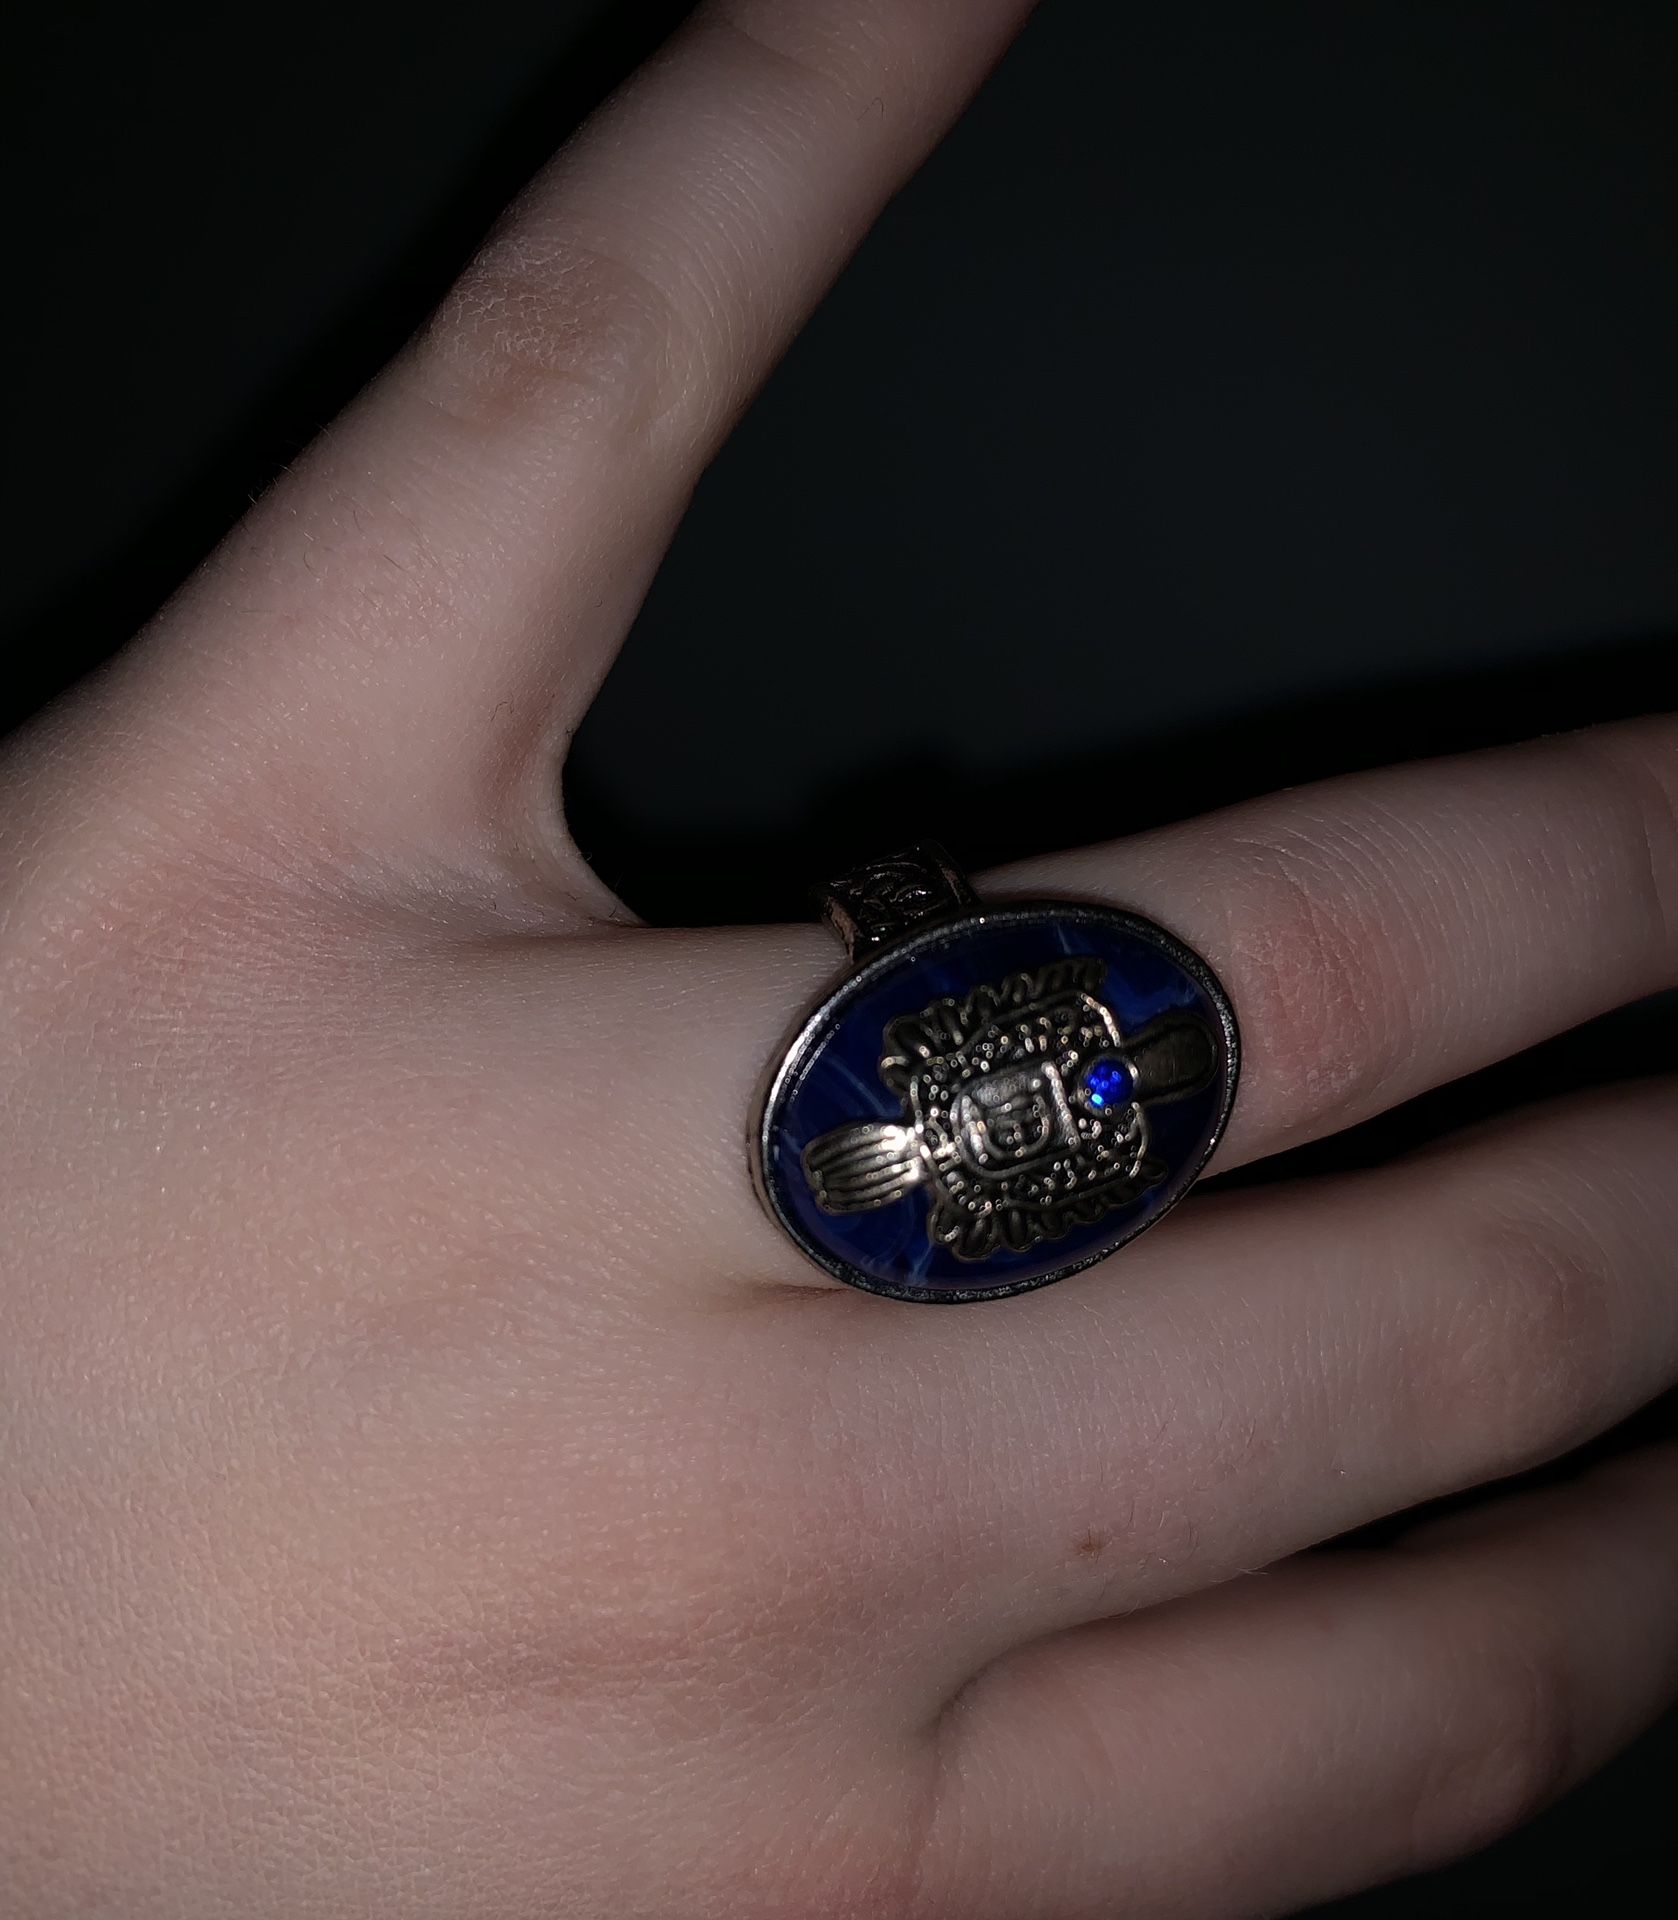 Salvatore ring from the vampire diaries